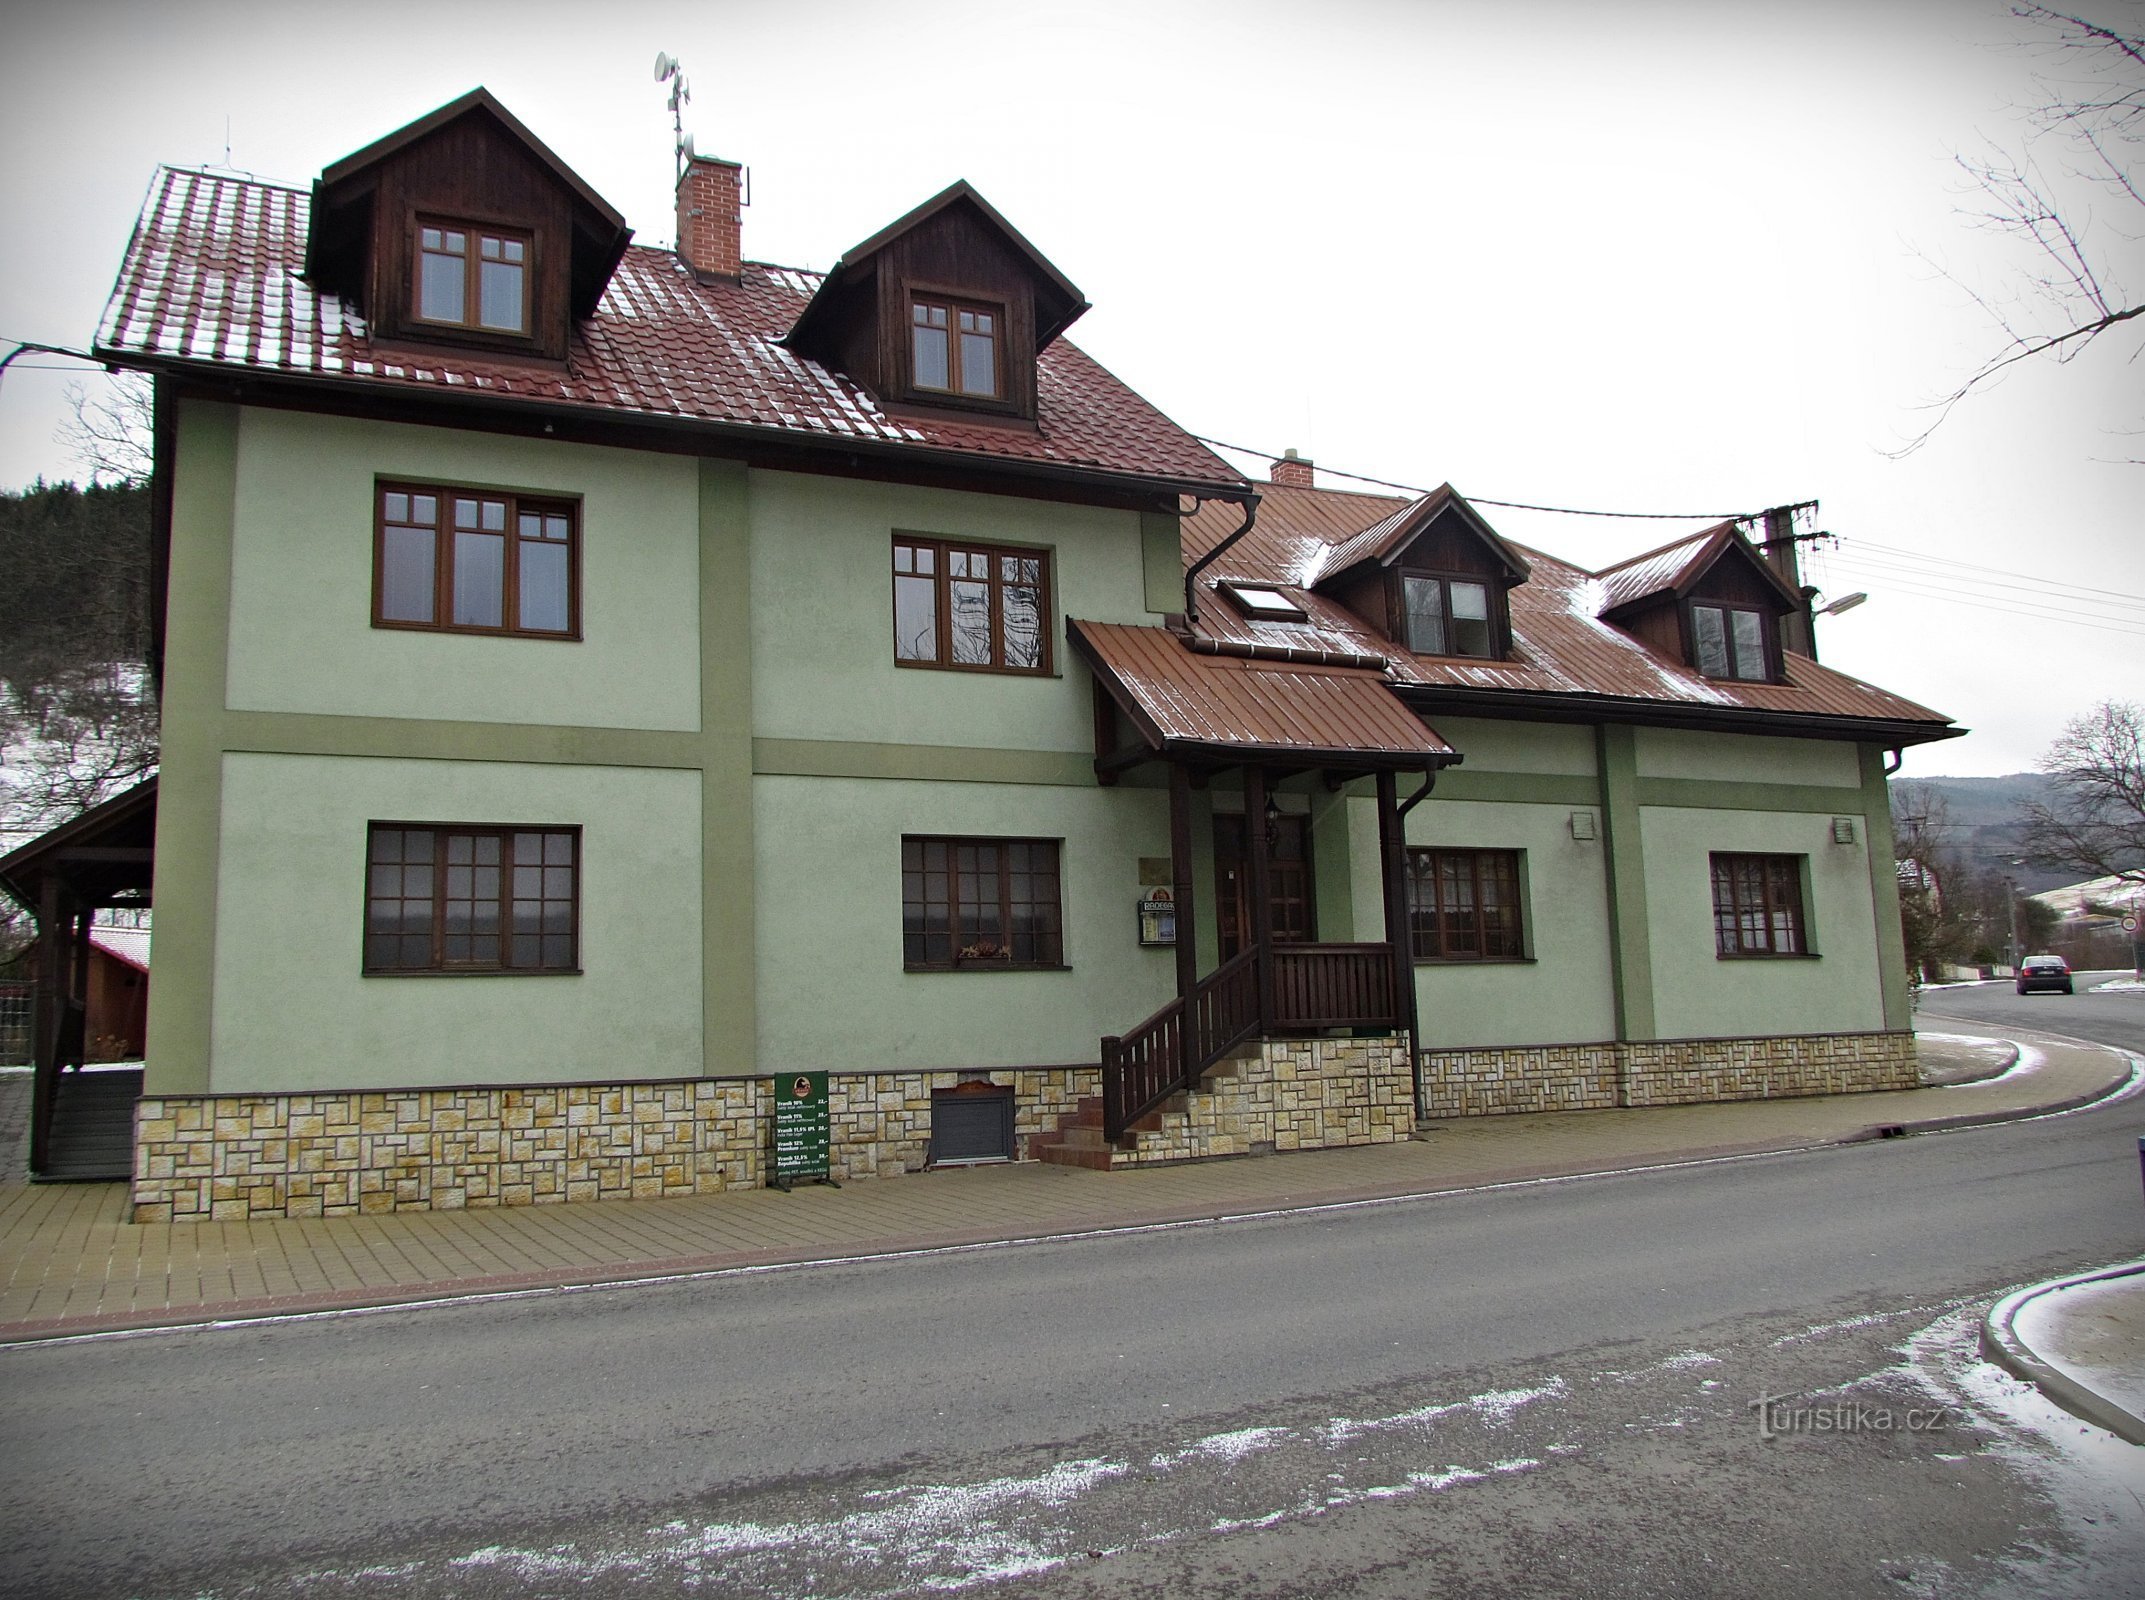 Penzion Trnava, gostilna in pivovarna Koníček